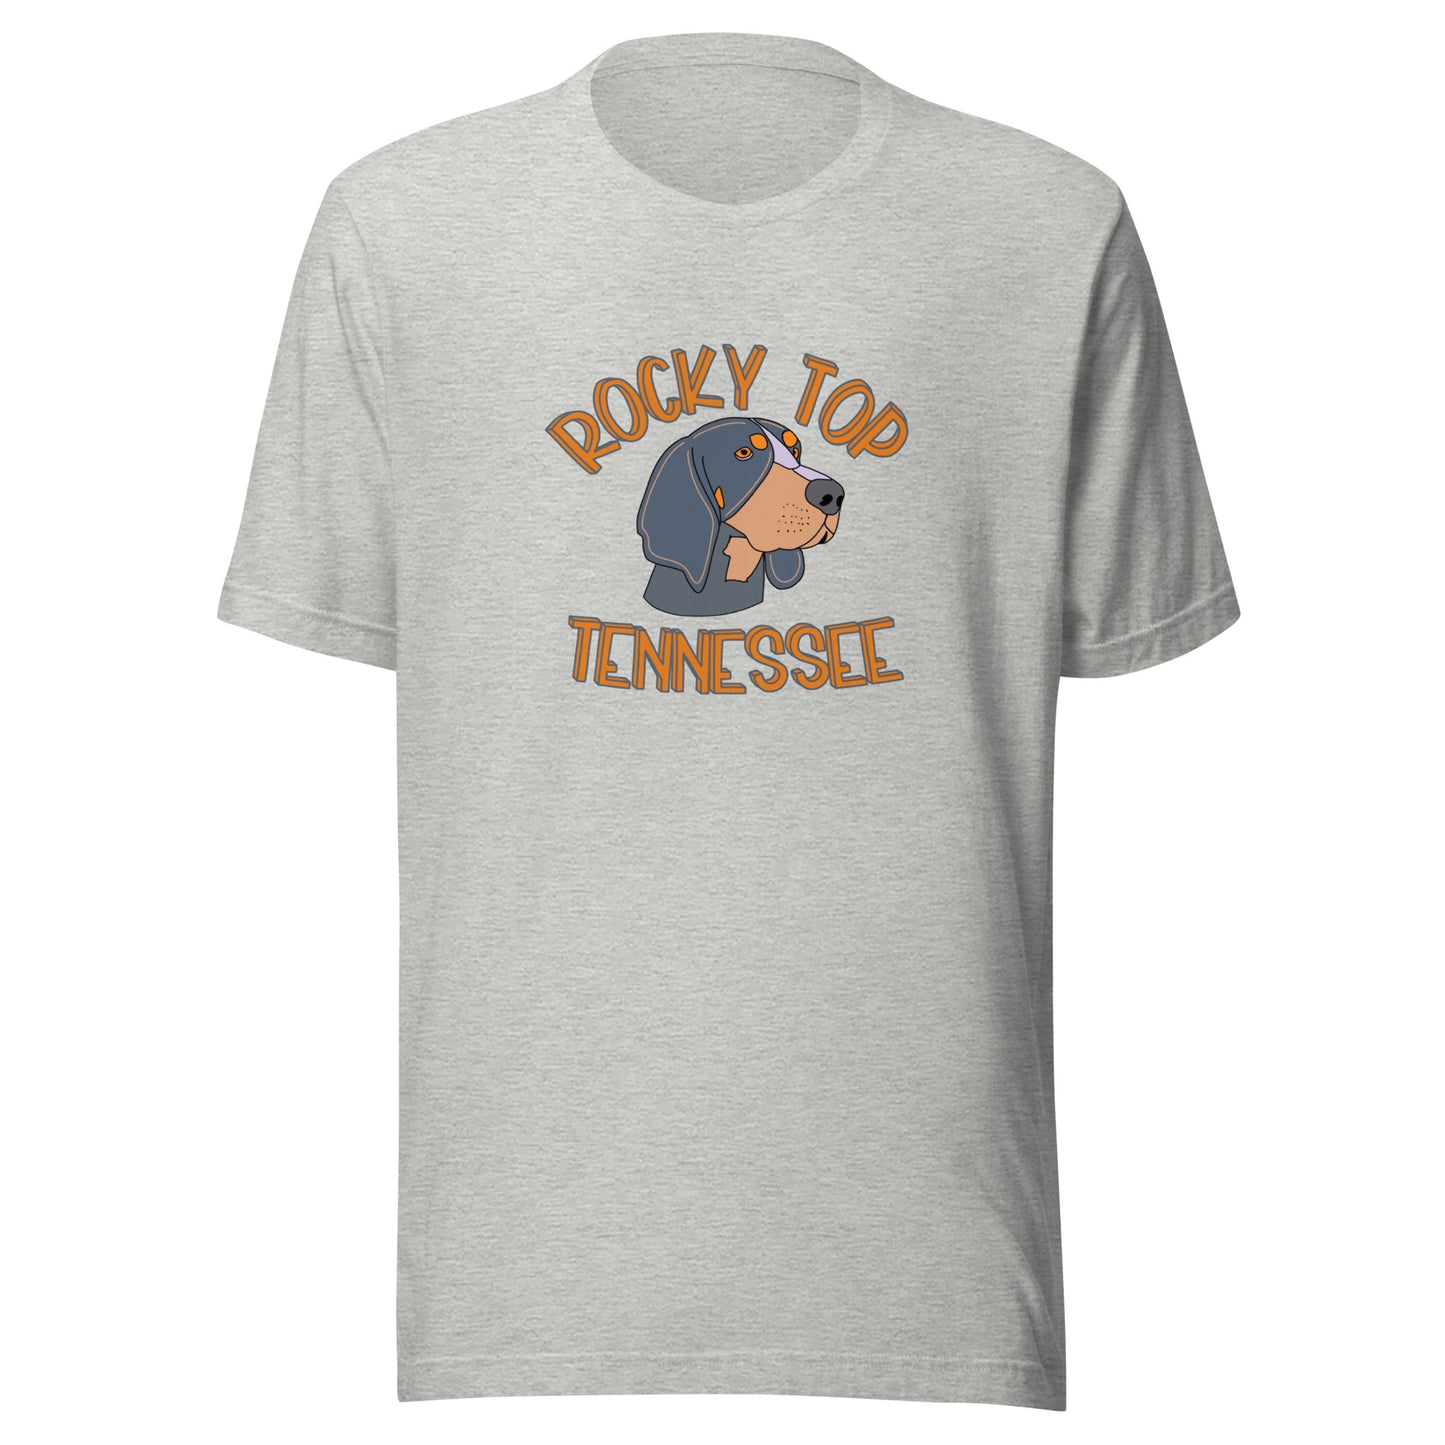 Rocky Top t-shirt